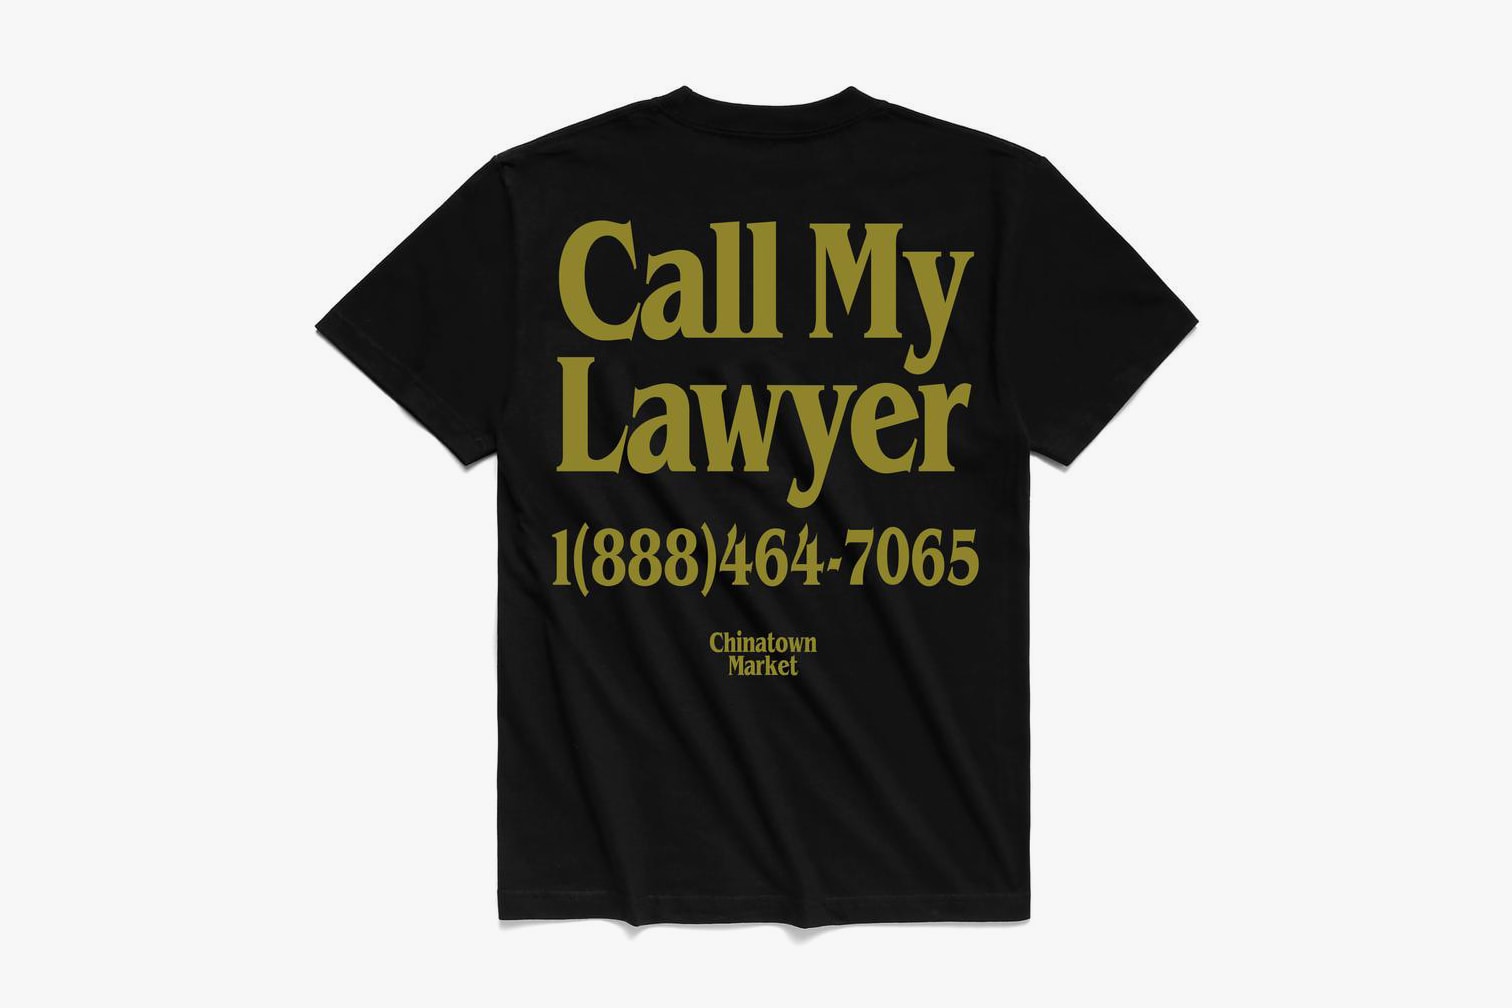 실제 변호사와 차이나타운 마켓이 함께 만든 'Call My Lawyer' 컬렉션, 변호사, 모스키노, H&M, 흐앤므, 그래피티, 제레미 스콧